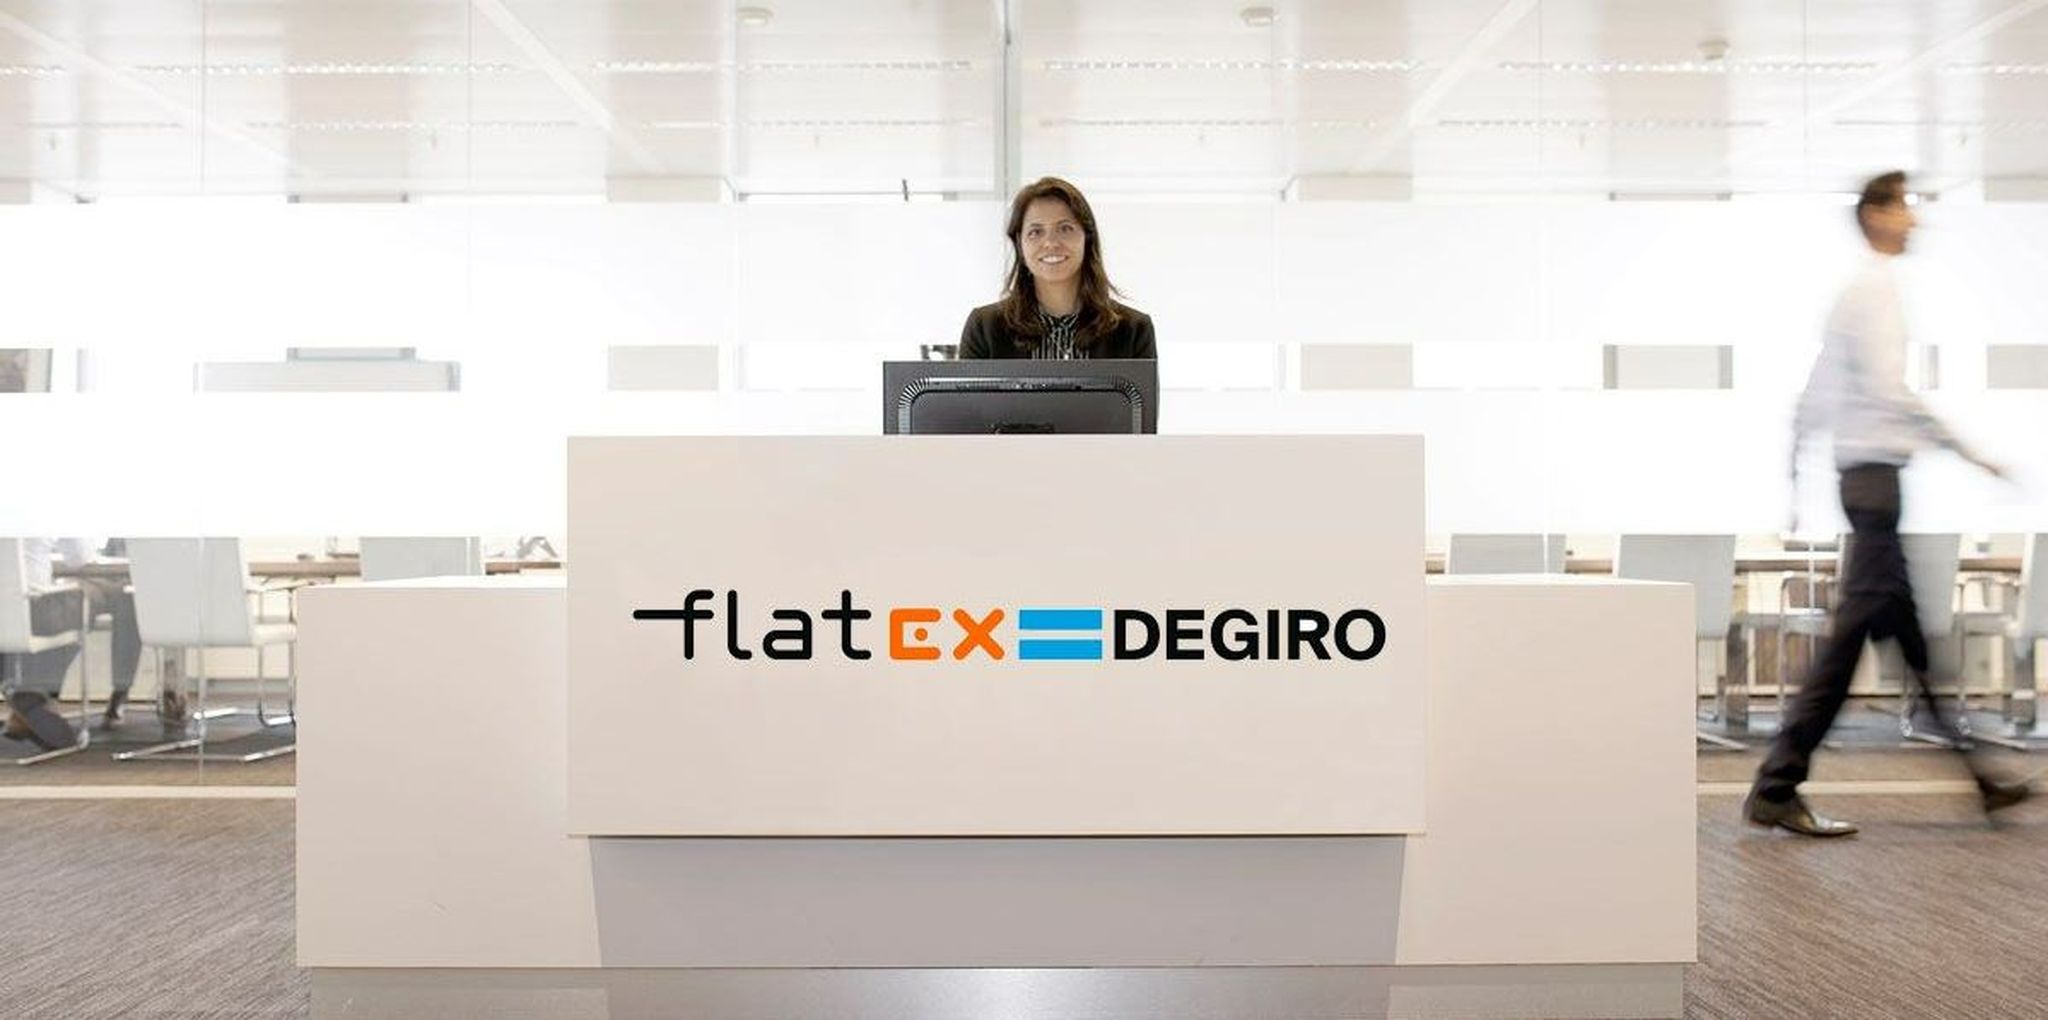 FlatexDegiro rekent op flinke winststijging dit jaar